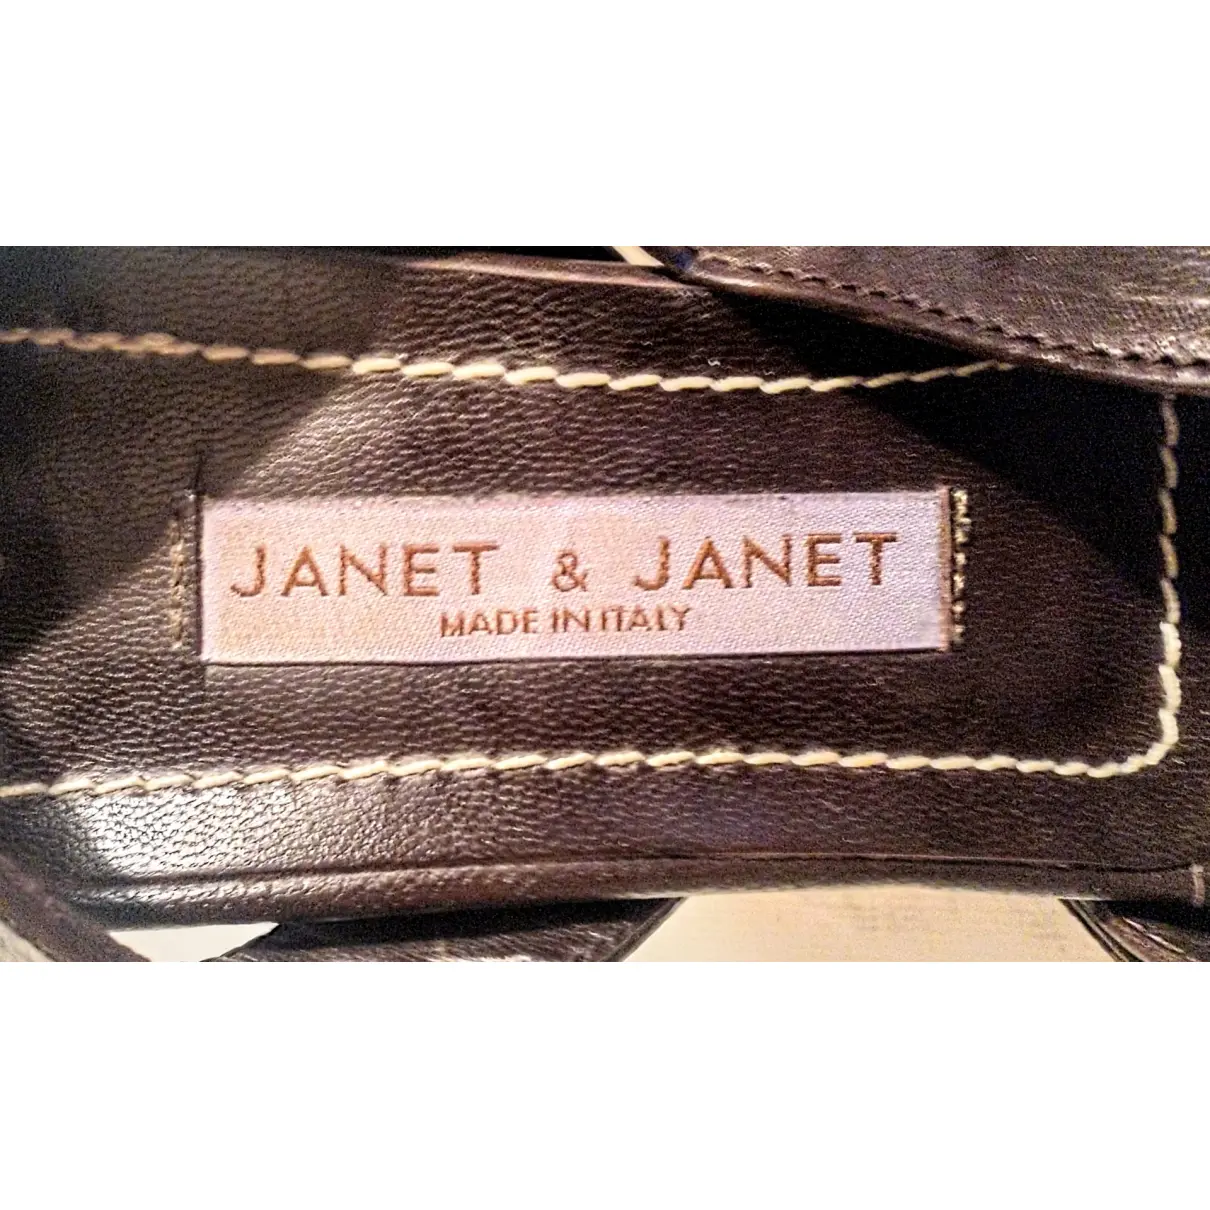 Luxury Janet & Janet Sandals Women